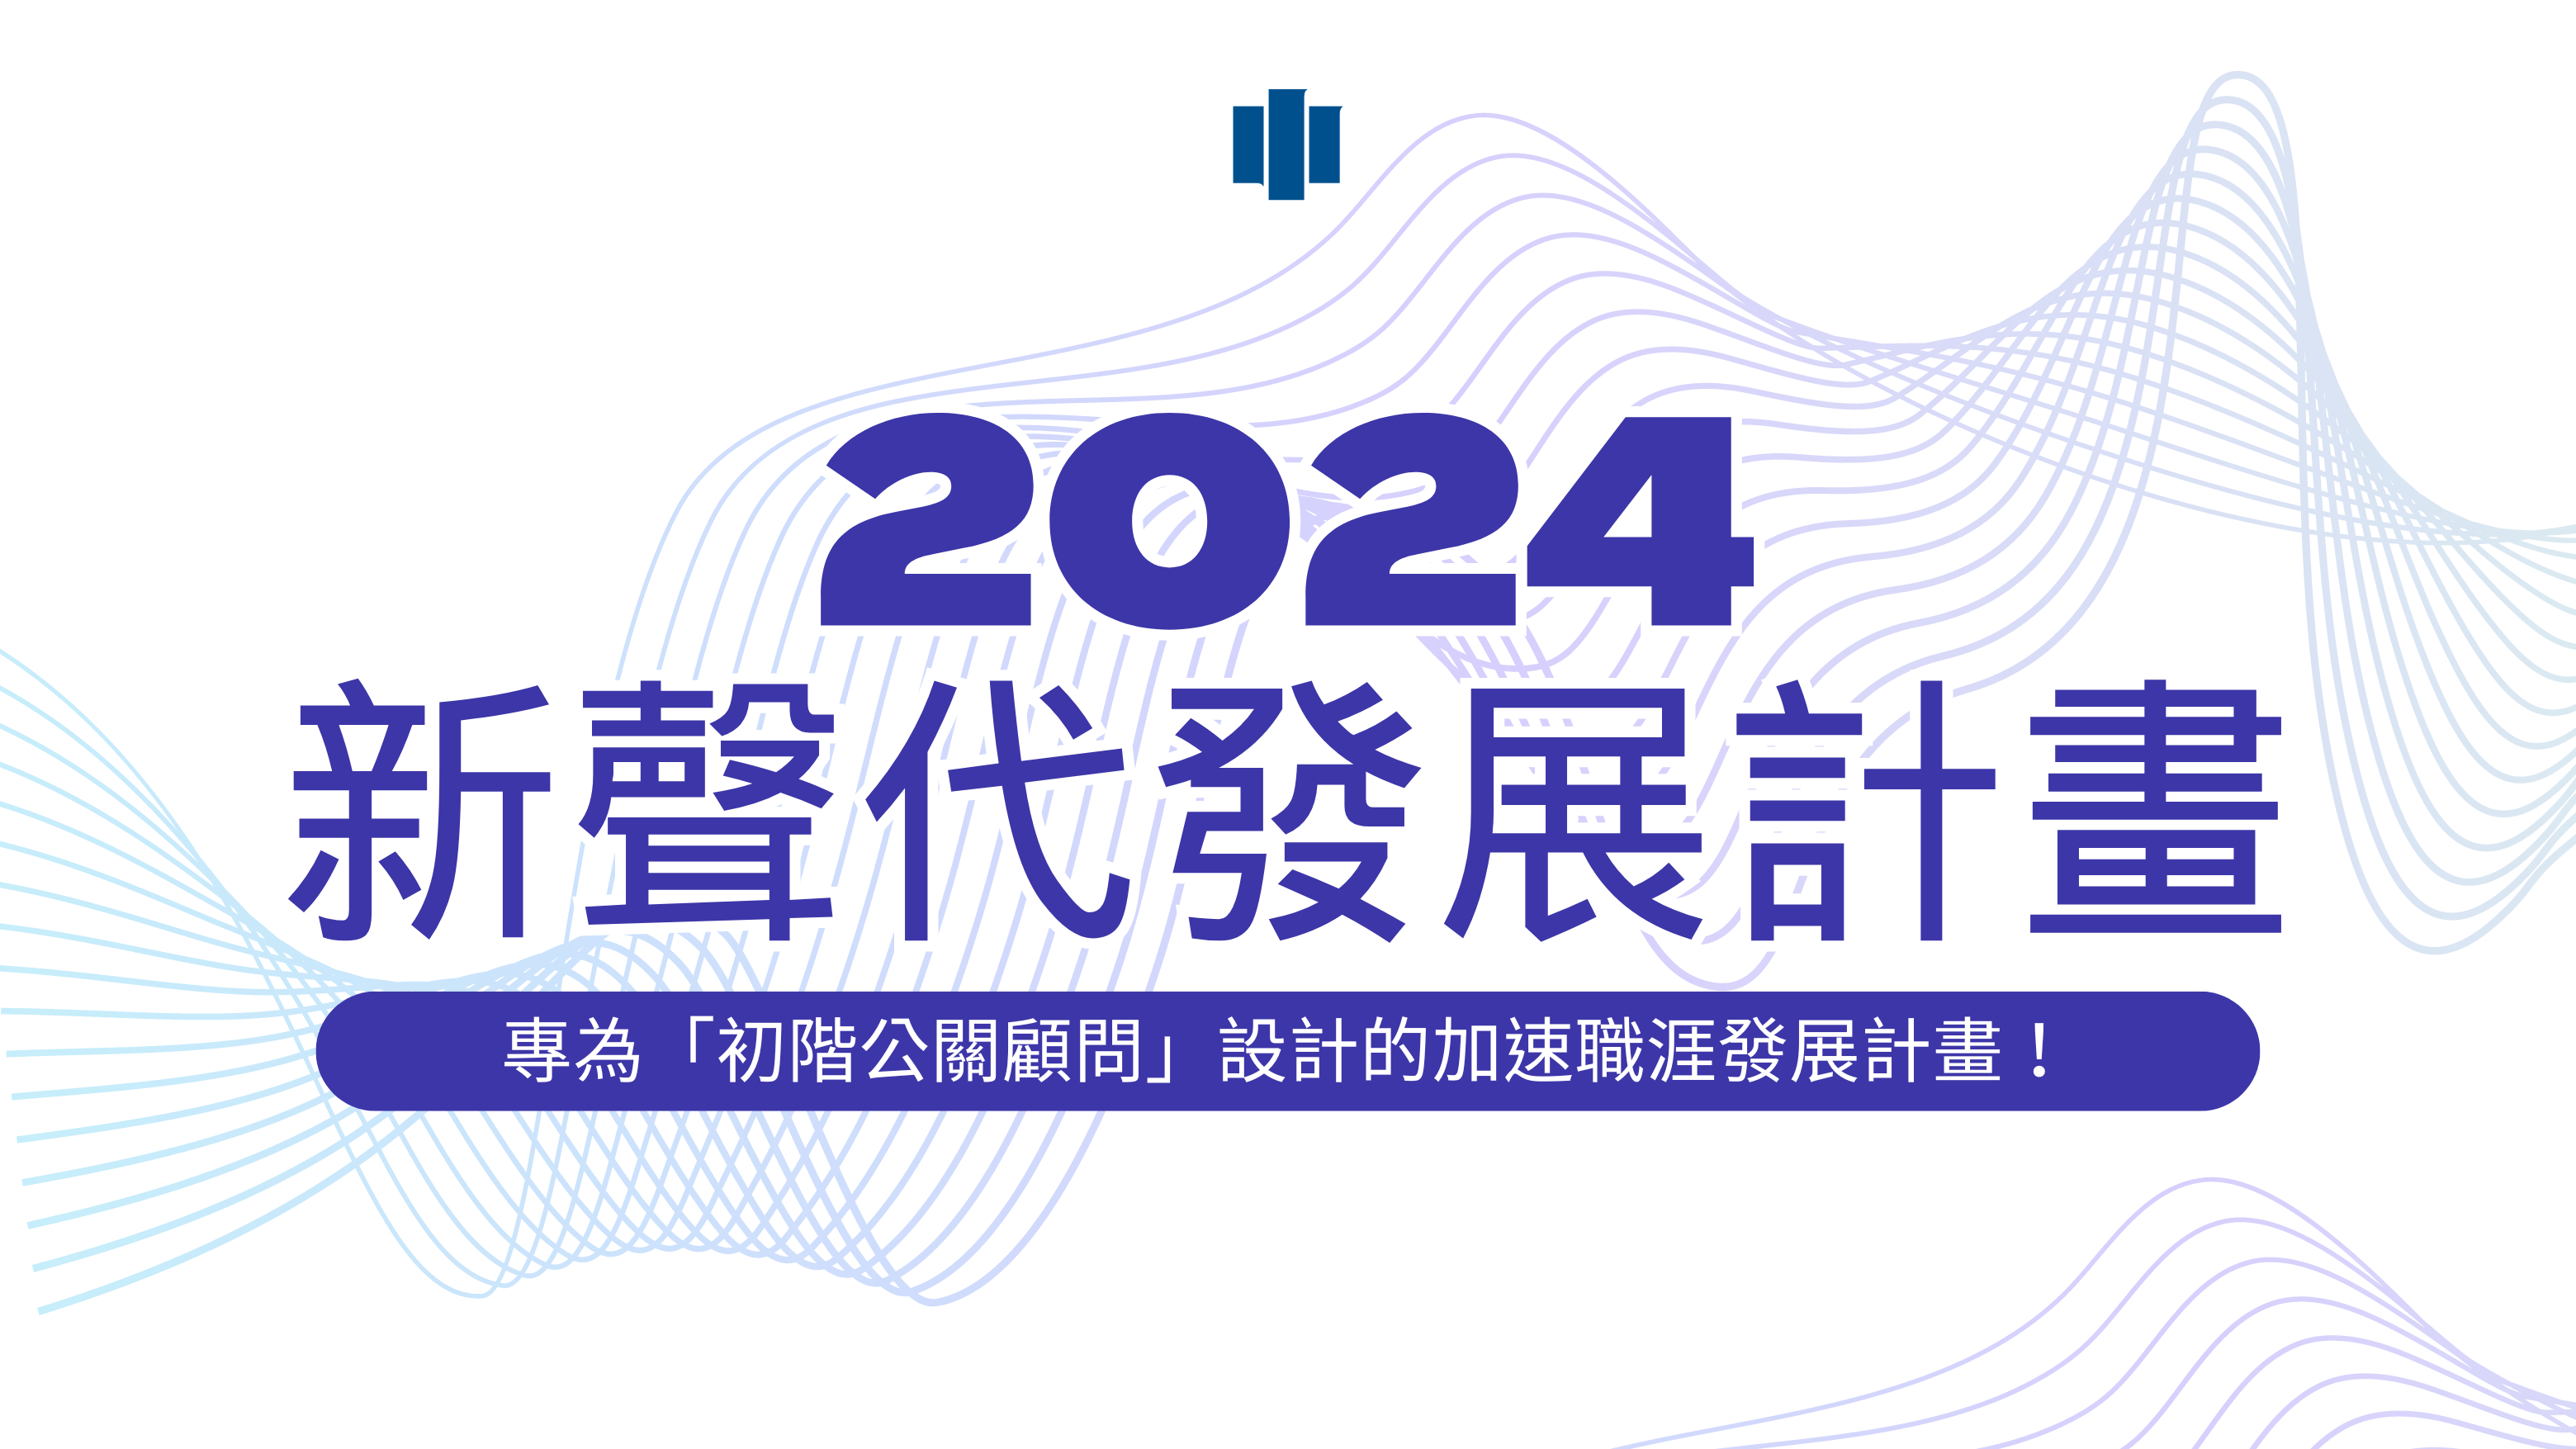 【招募】2024新聲代發展計畫－專為「初階公關顧問」設計的加速職涯發展計畫！